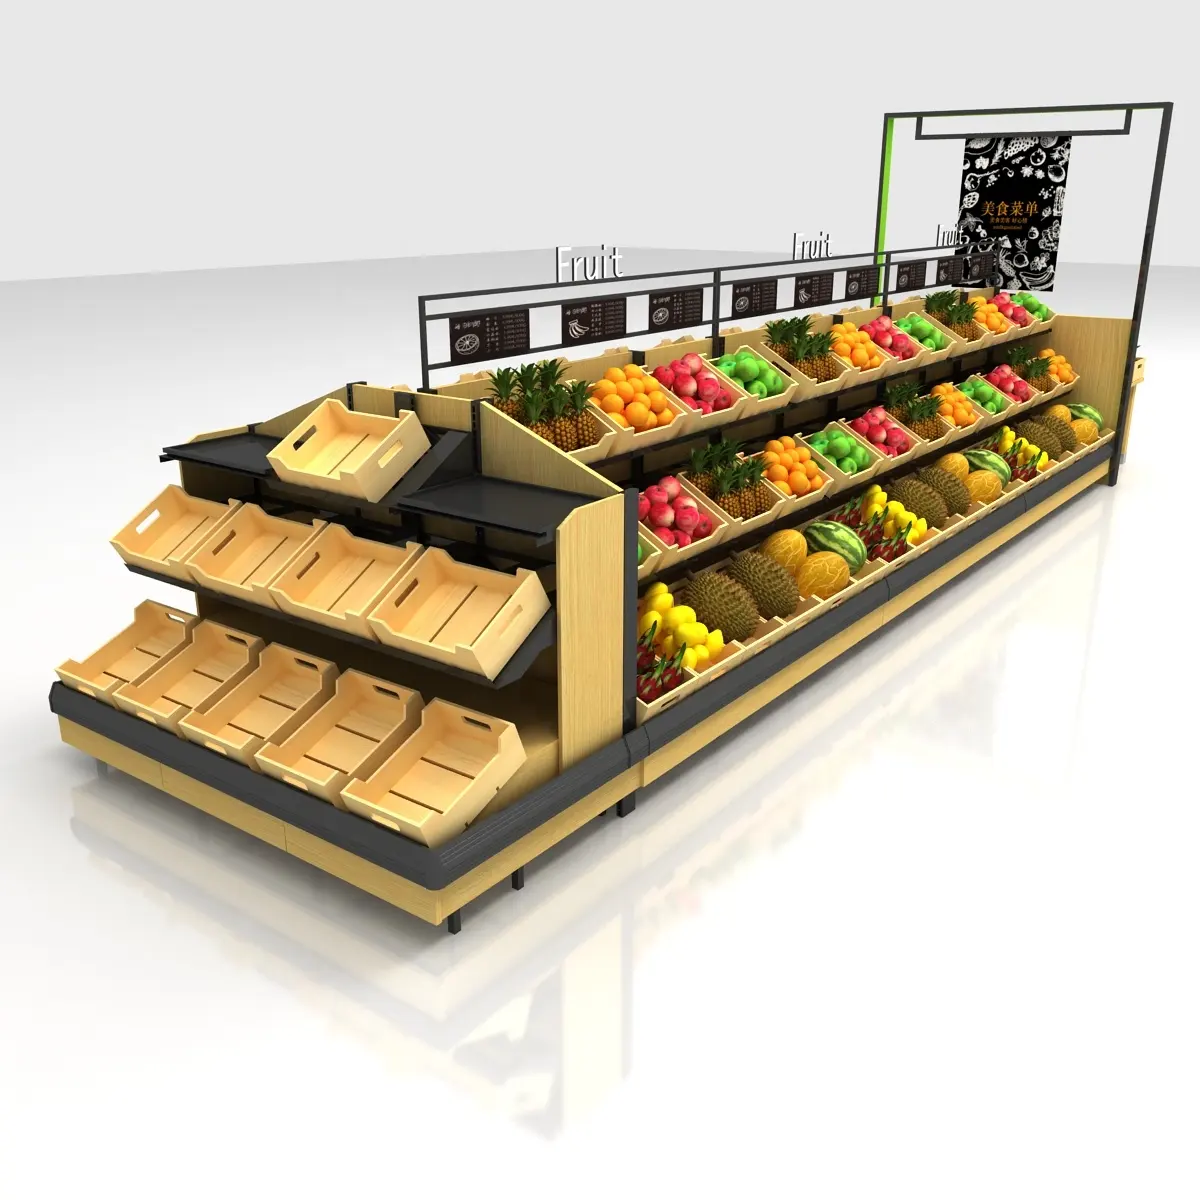 Estante de madera para exhibición de frutas y verduras, estante de buen diseño para supermercado